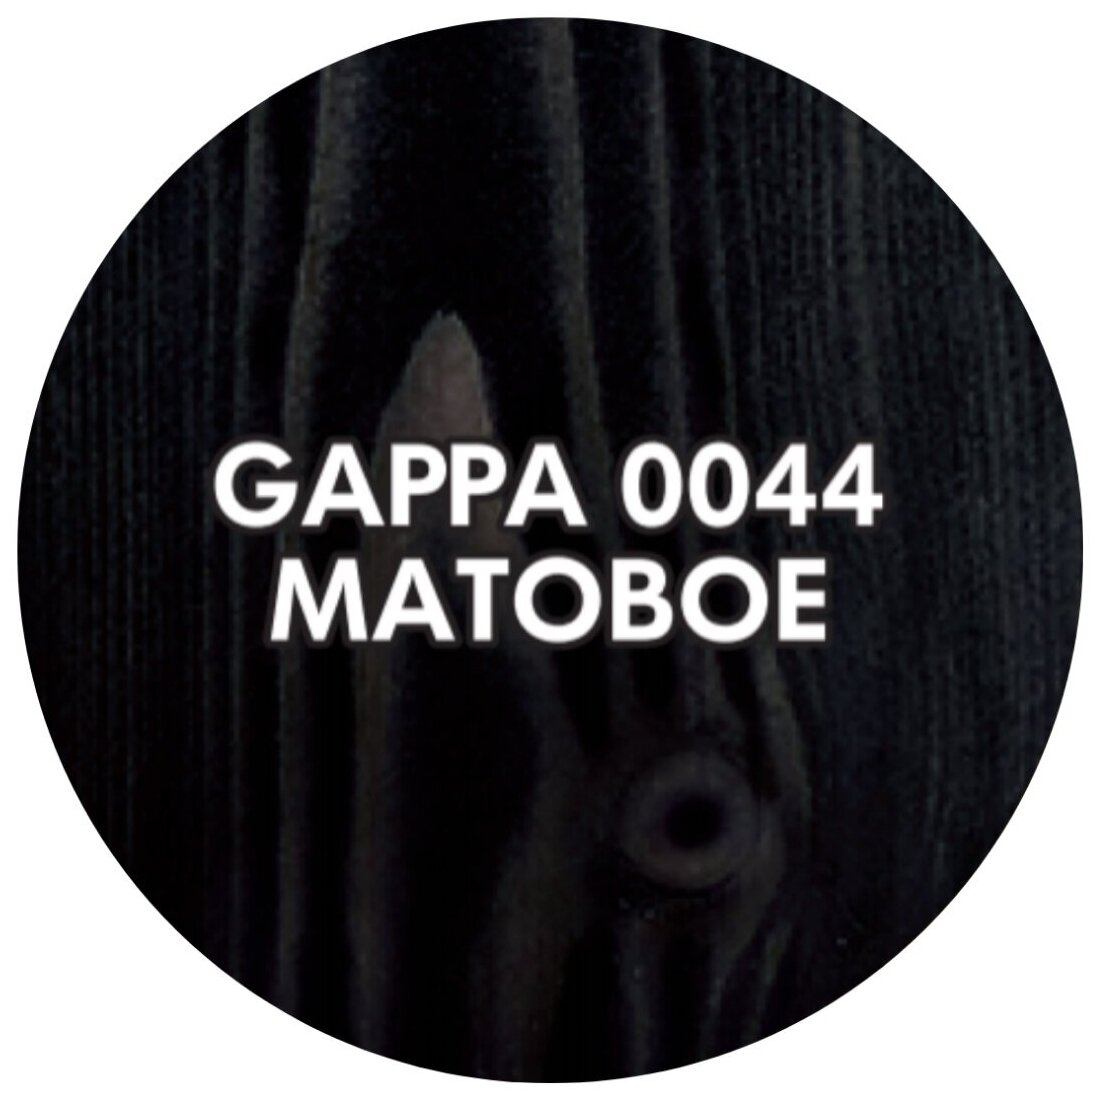 Масло-воск GAPPA матовое, 0044 черное, 1 л